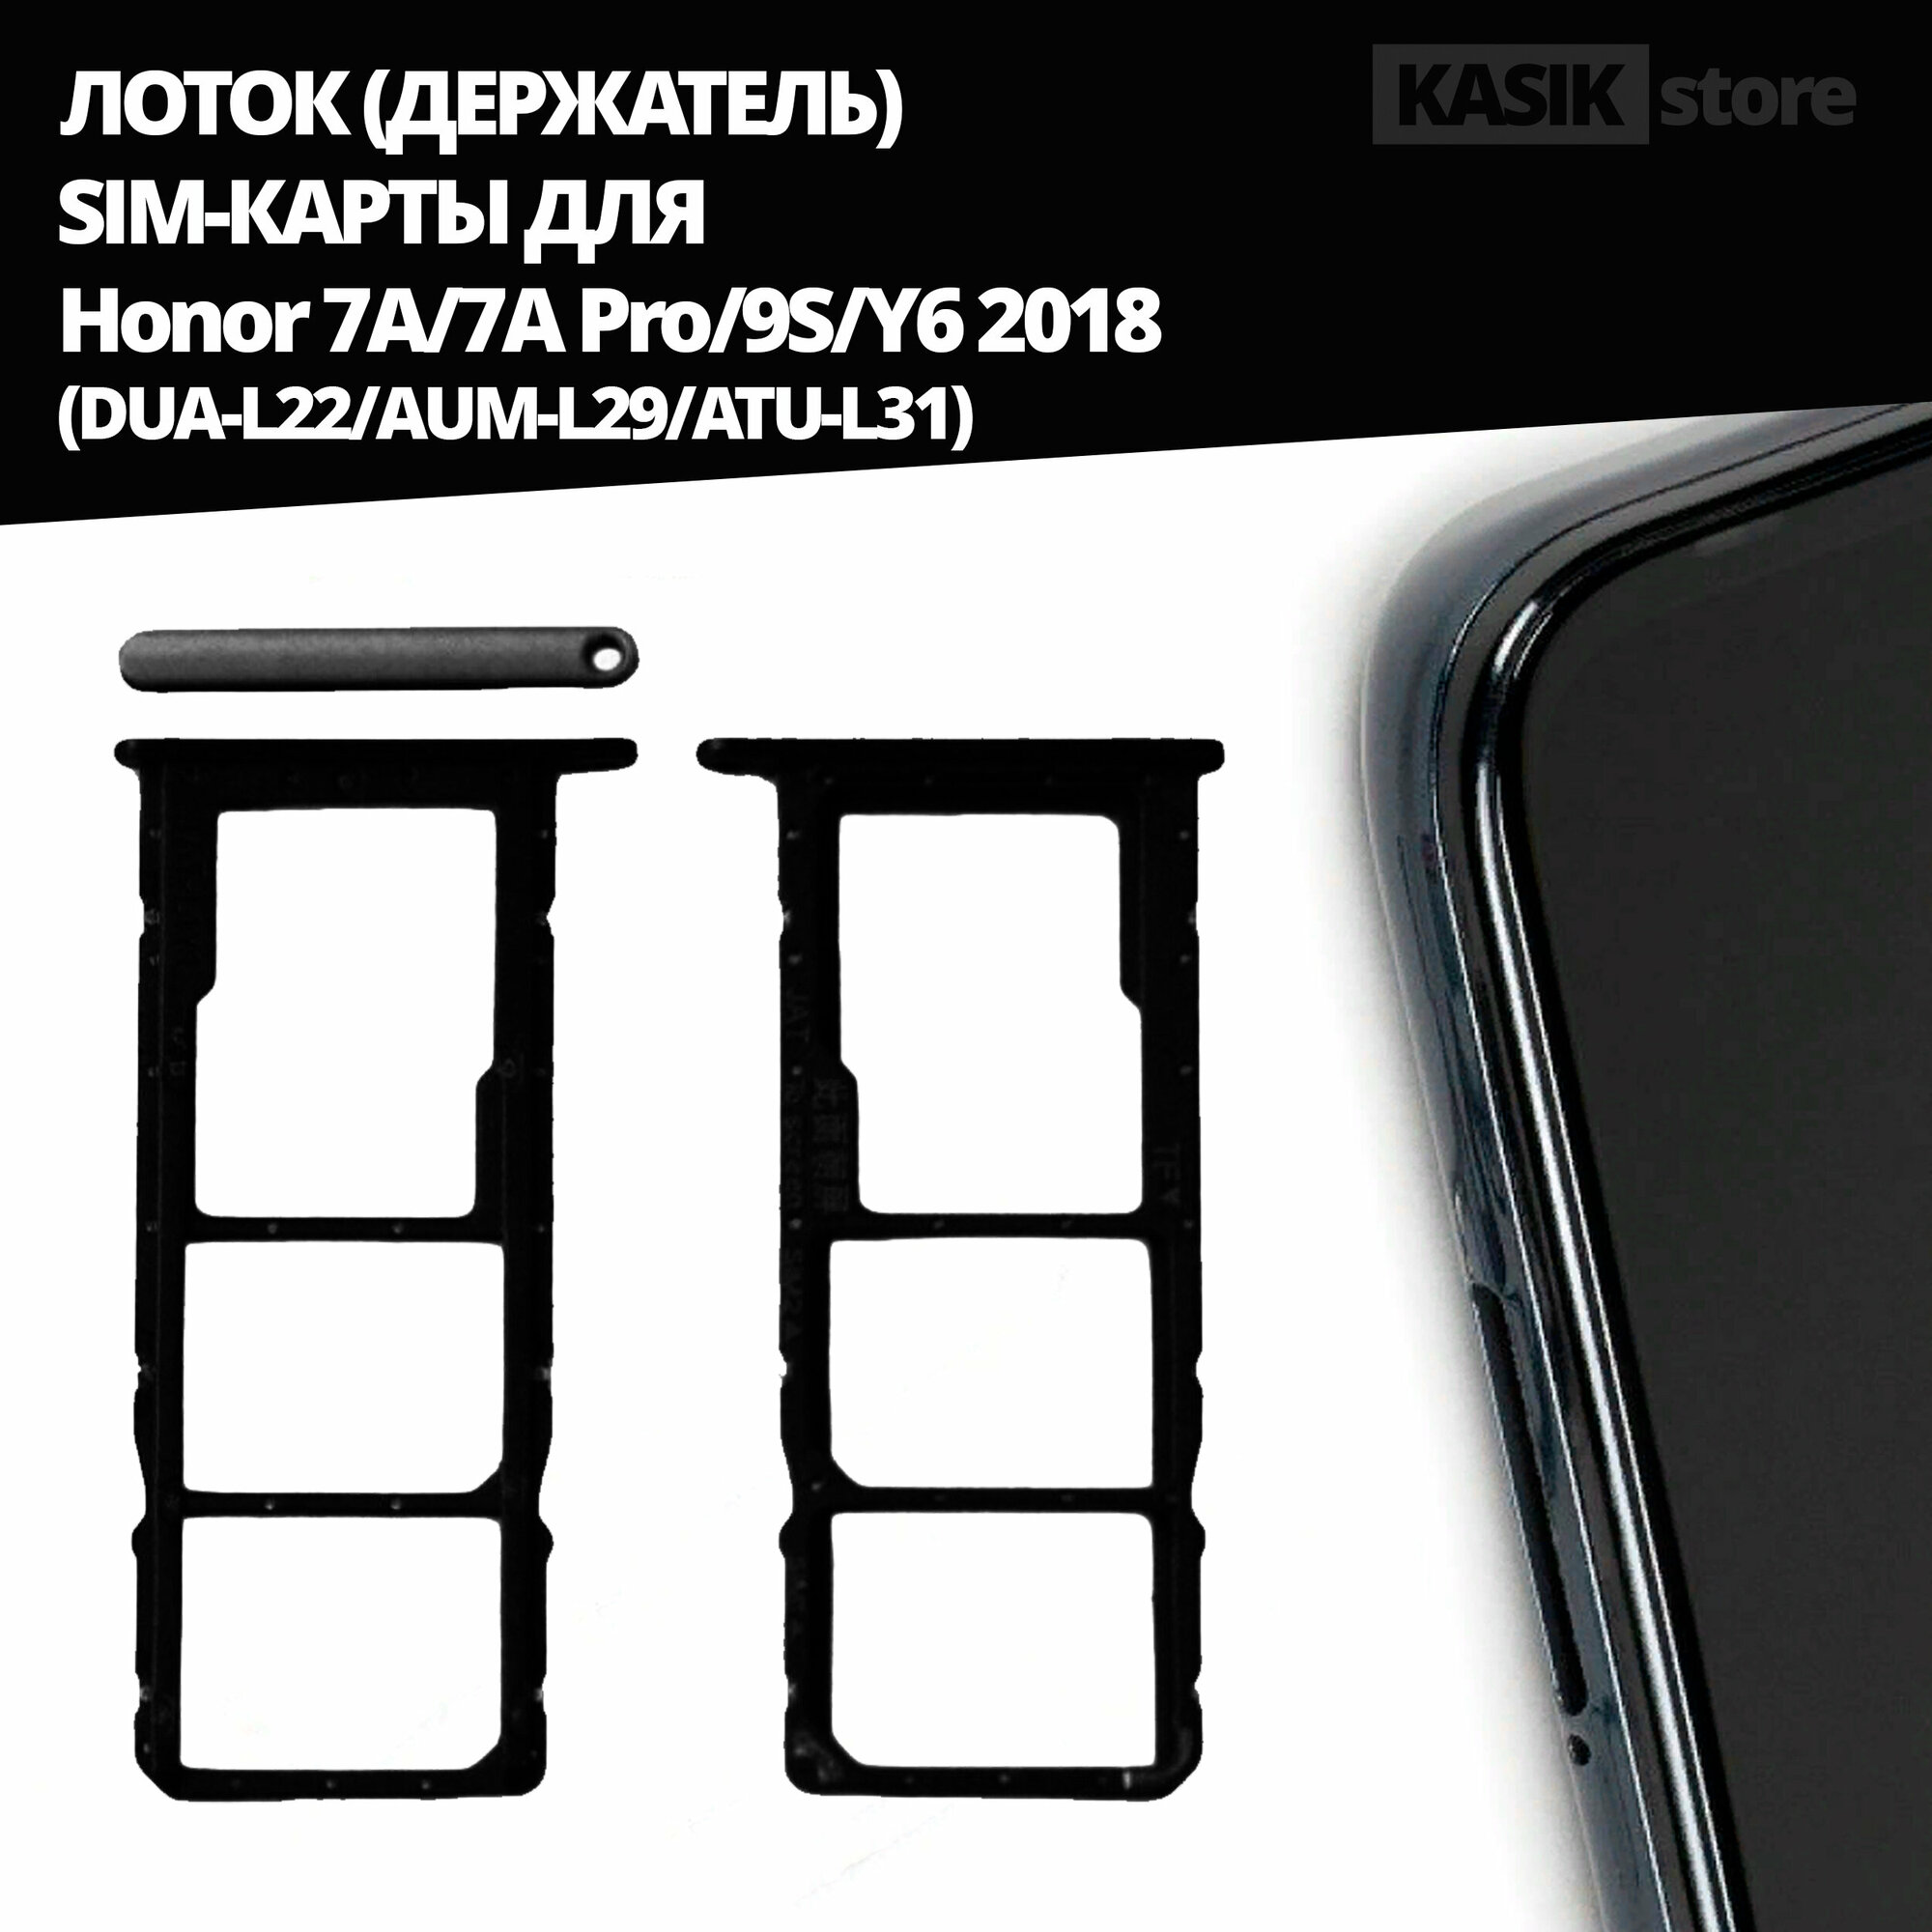 Лоток, контейнер (держатель) SIM-карты KASIK Honor 7A/7A Pro/9S/Y6 2018 (DUA-L22/AUM-L29/ATU-L31), чёрный